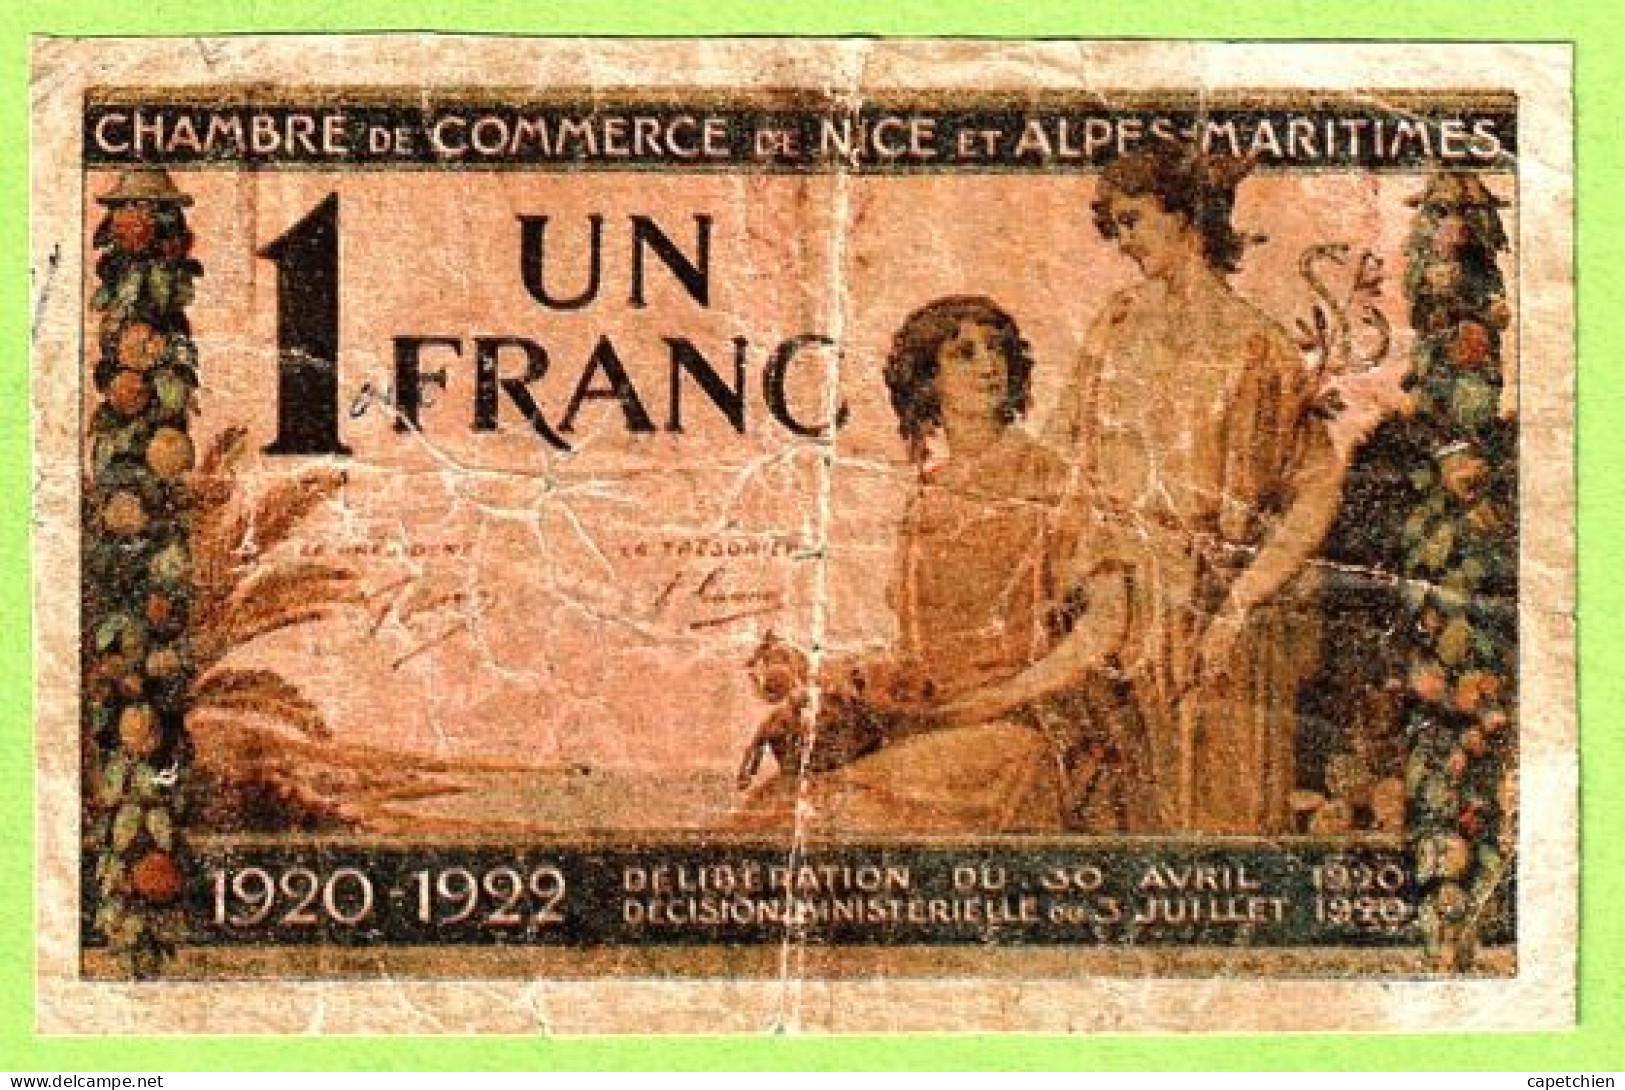 FRANCE / CHAMBRE De COMMERCE / NICE - ALPES MARITIMES / 1 FRANC / 30 AVRIL 1920 / N° 0.030.985 / SERIE 145 - Chambre De Commerce